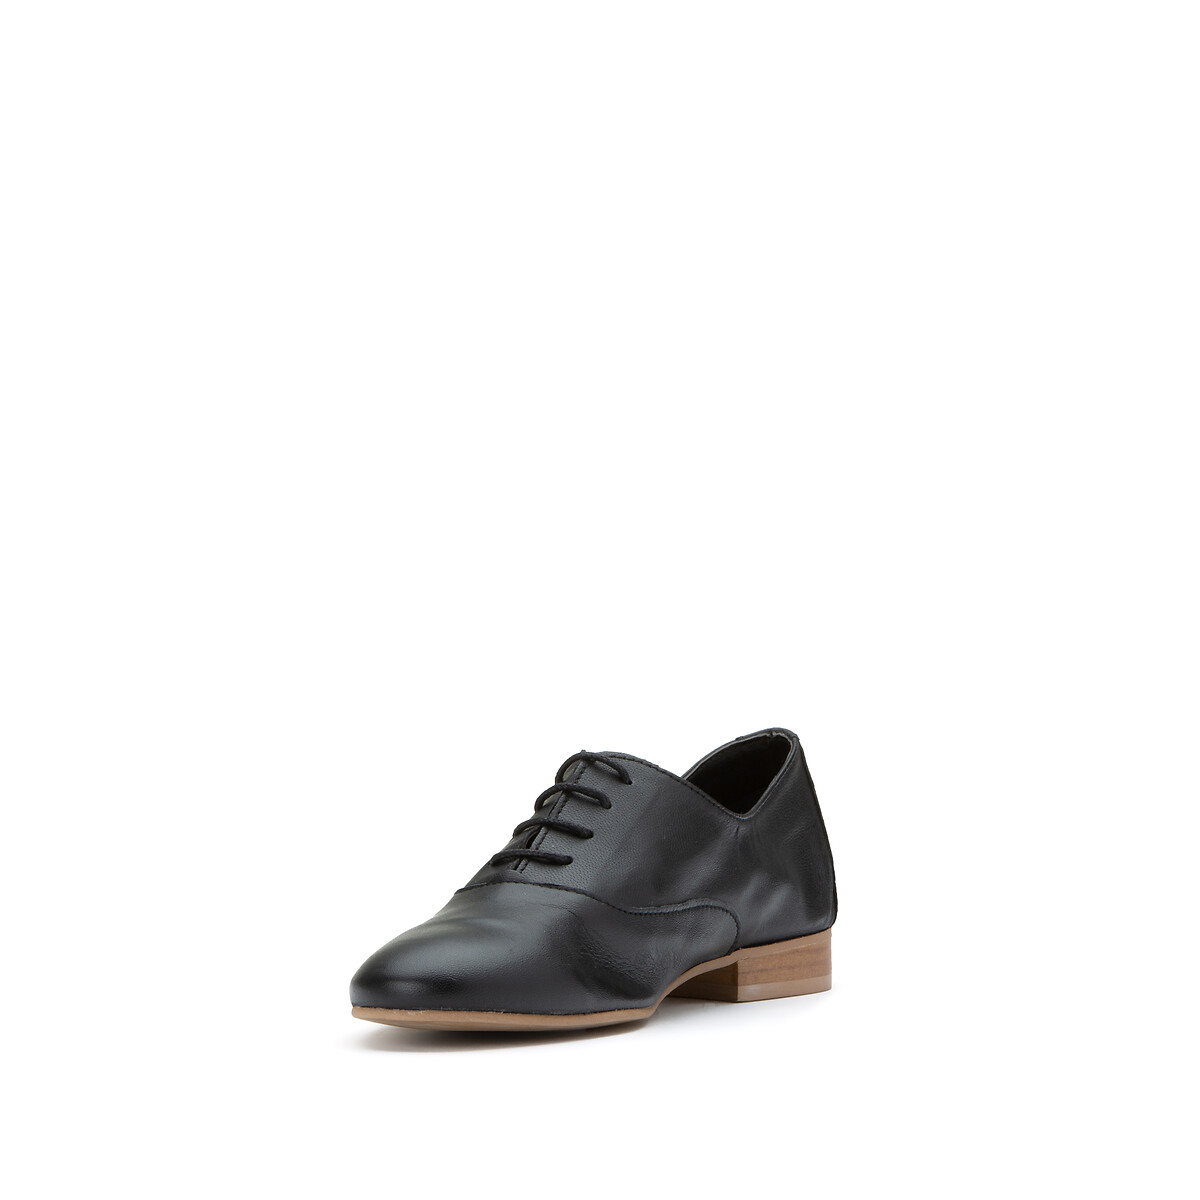 Ботинки-дерби La Redoute Из мягкой кожи 37 черный, размер 37 - фото 2